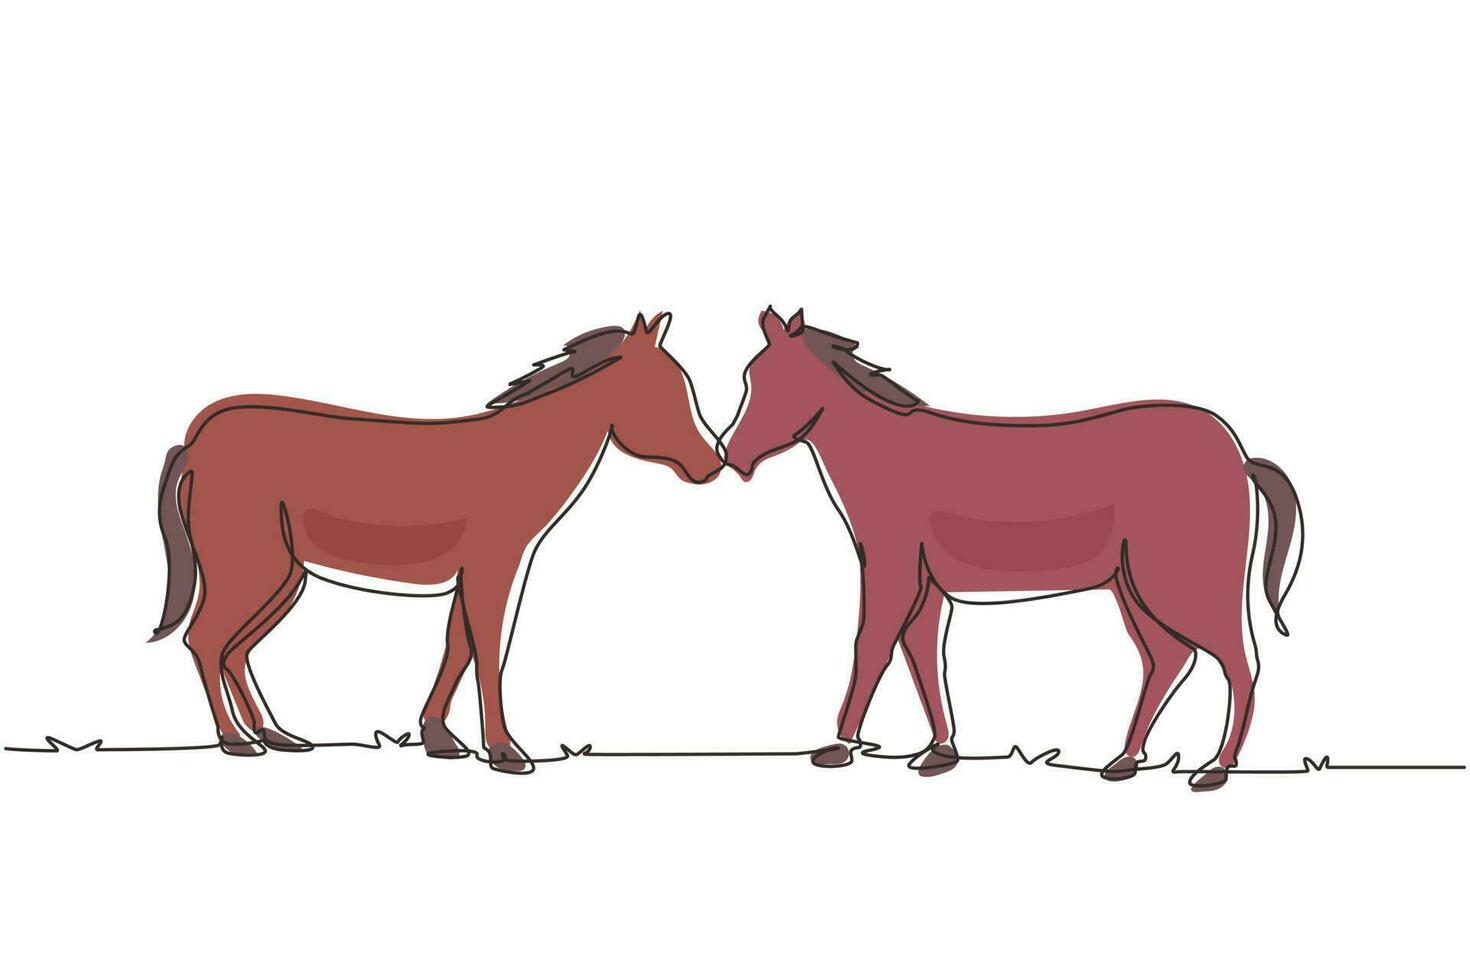 dibujo de una sola línea continua dos caballos caminan graciosamente cara a cara. mustang salvaje galopa en la naturaleza libre. mascota animal para rancho de caballos. Ilustración de vector de diseño gráfico de dibujo de una línea dinámica